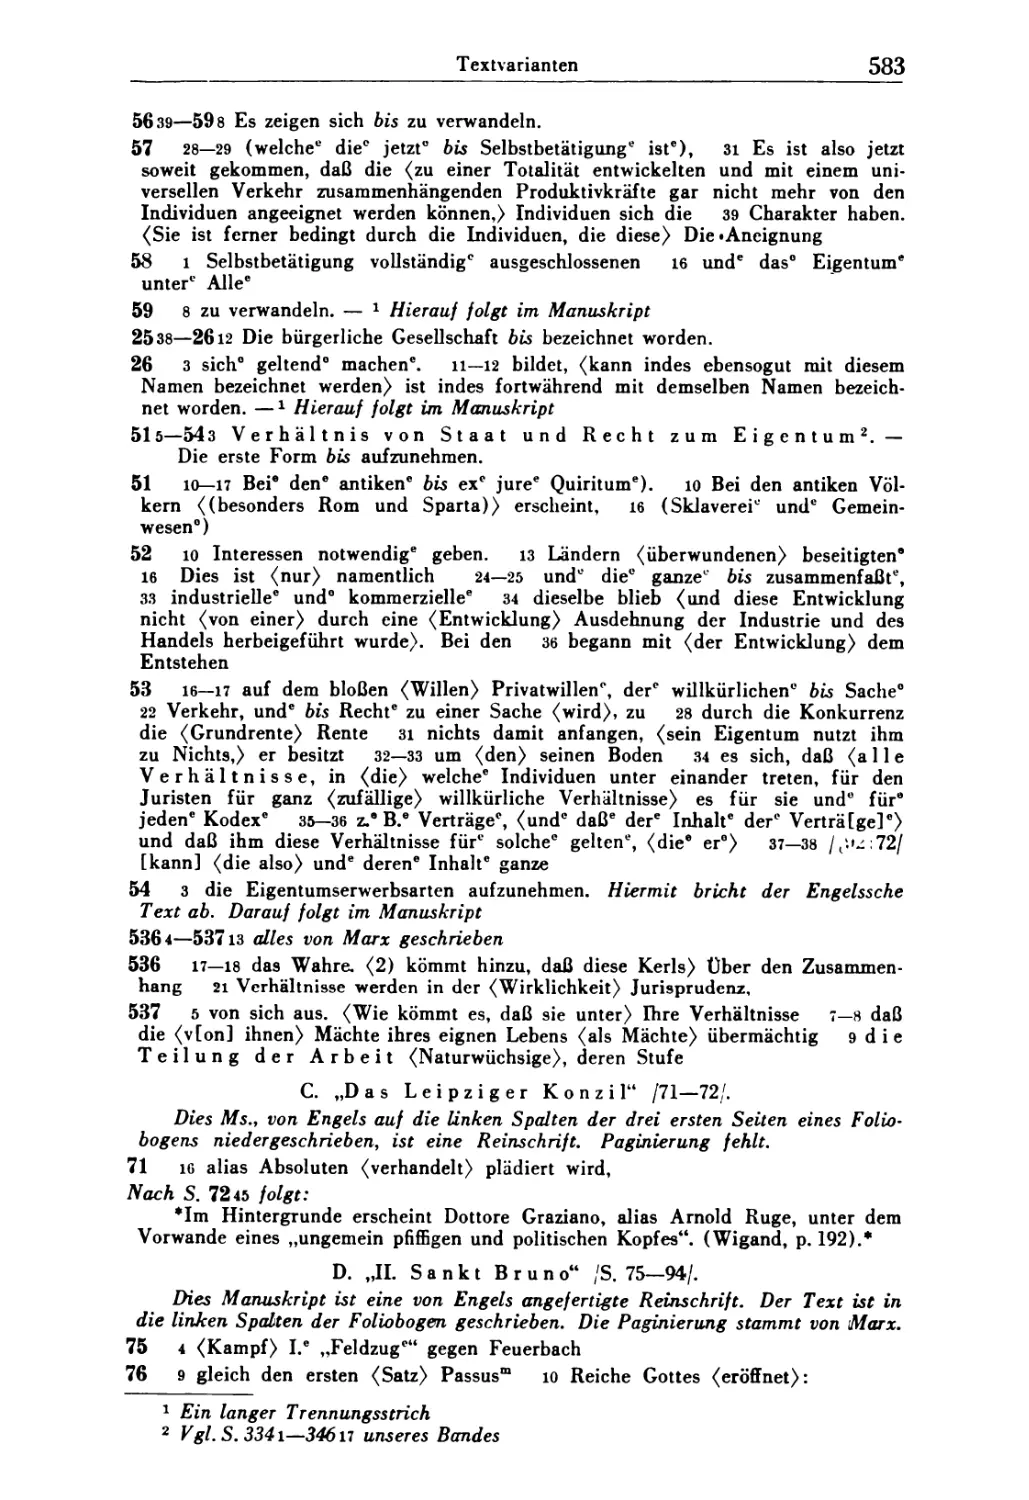 C. Aus: Das Leipziger Konzil
D. Aus: II. Sankt Bruno  583—